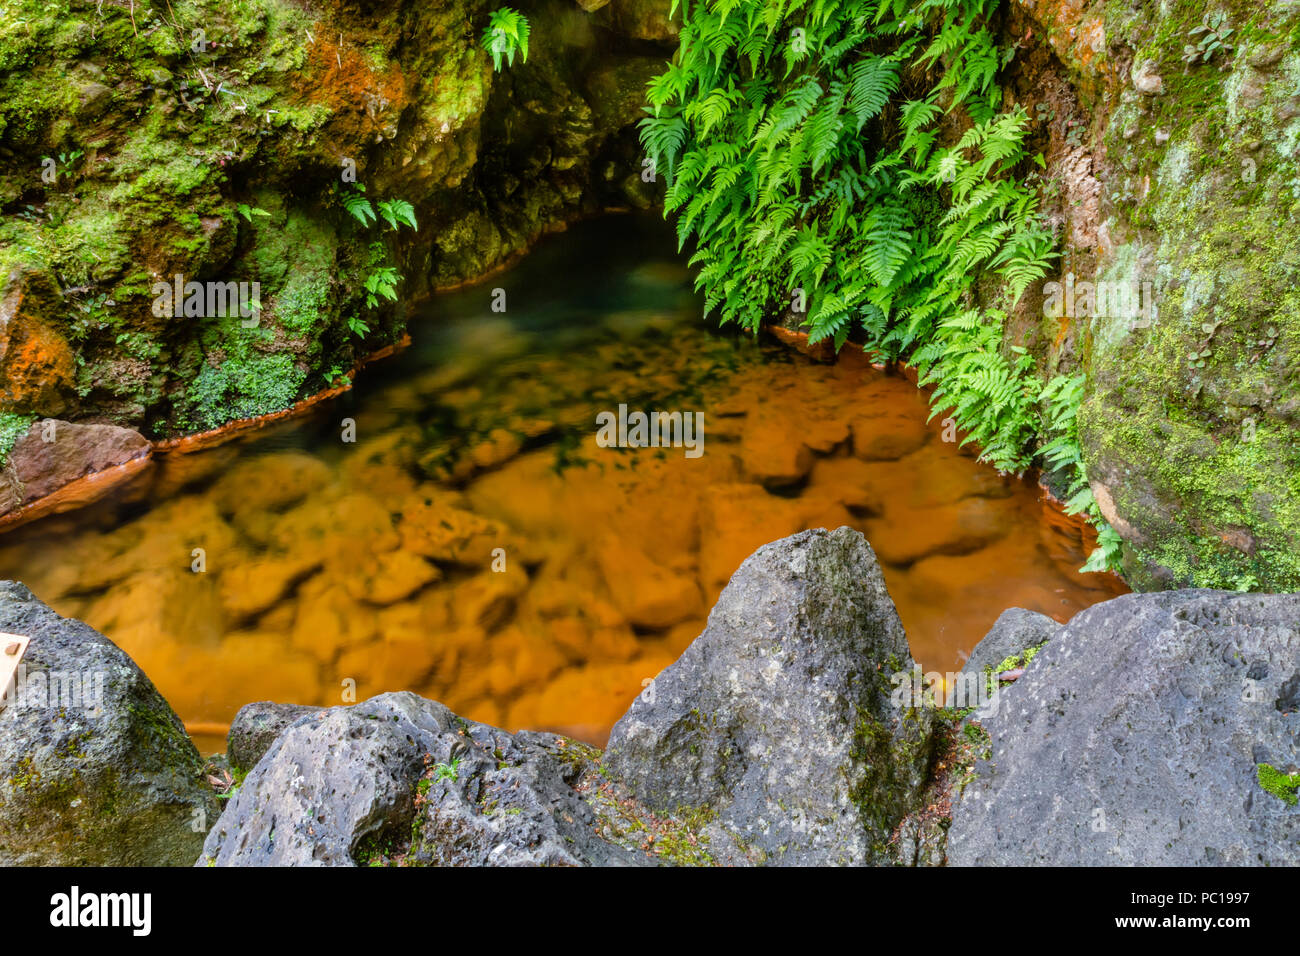 Naturaleza rica en aguas termales, minerales y un fuerte flujo de colores por doquier, Doña Beija, isla de Sao Miguel, Azores. Foto de stock